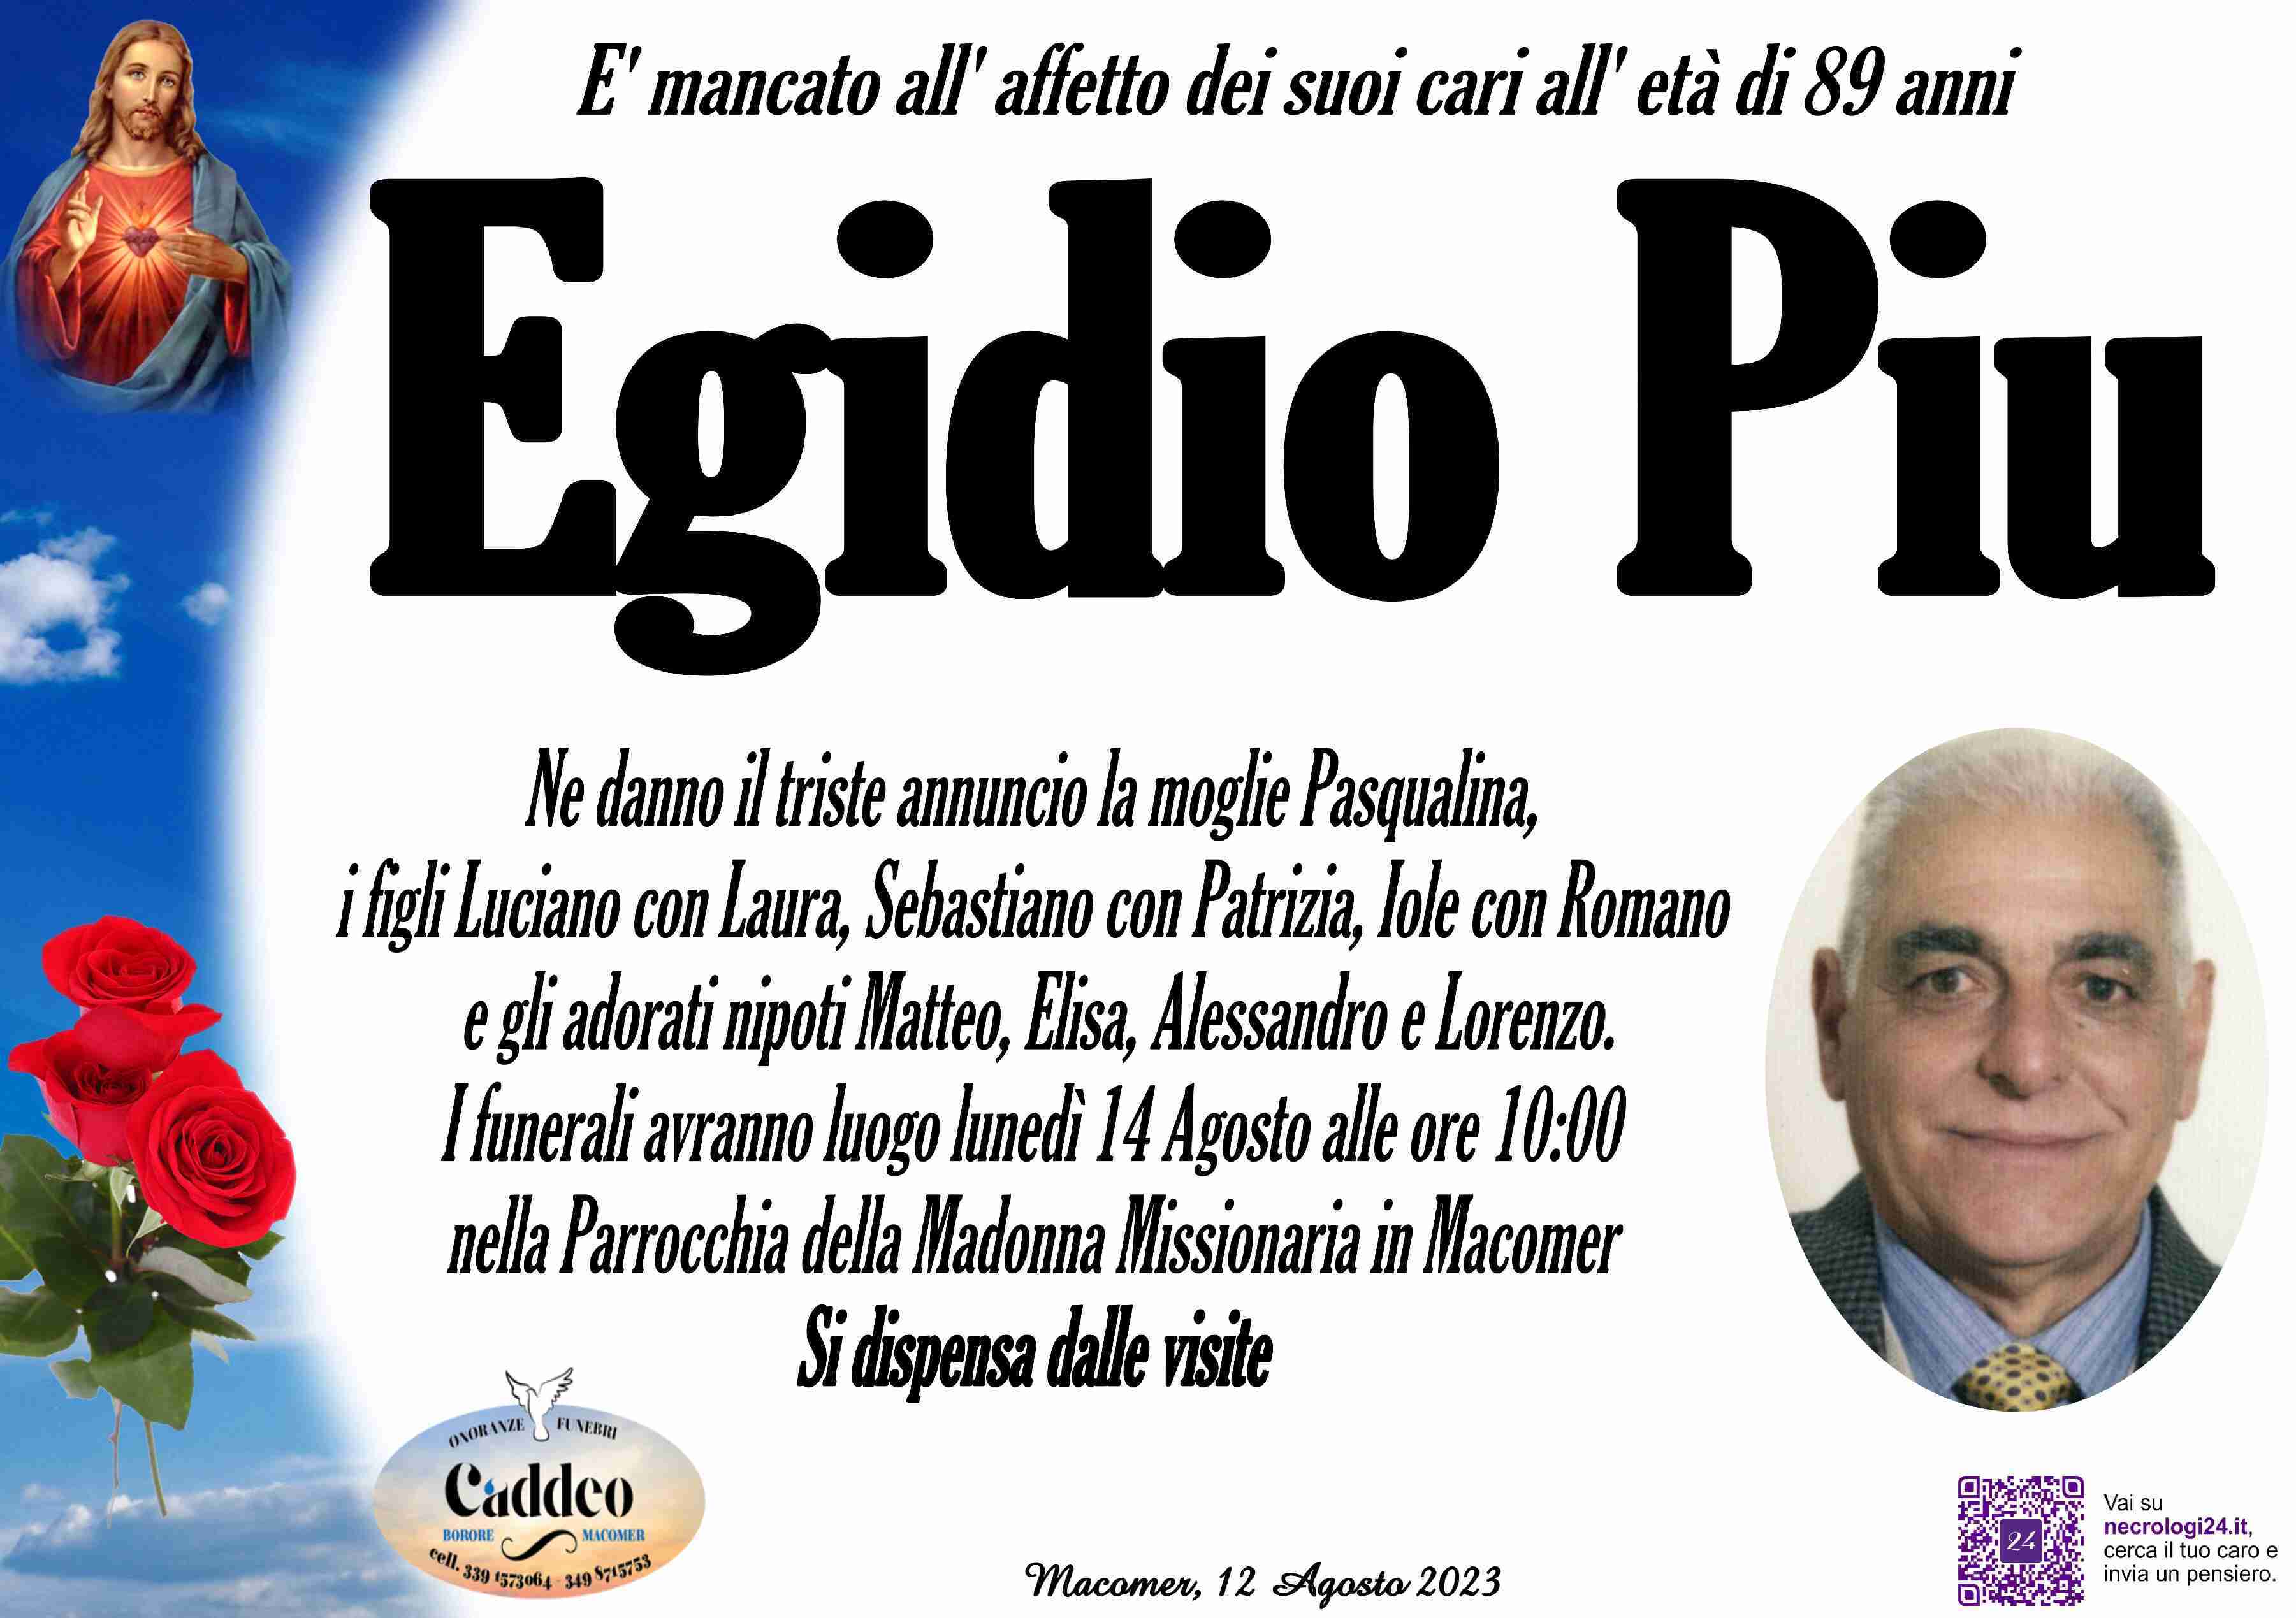 Egidio Piu